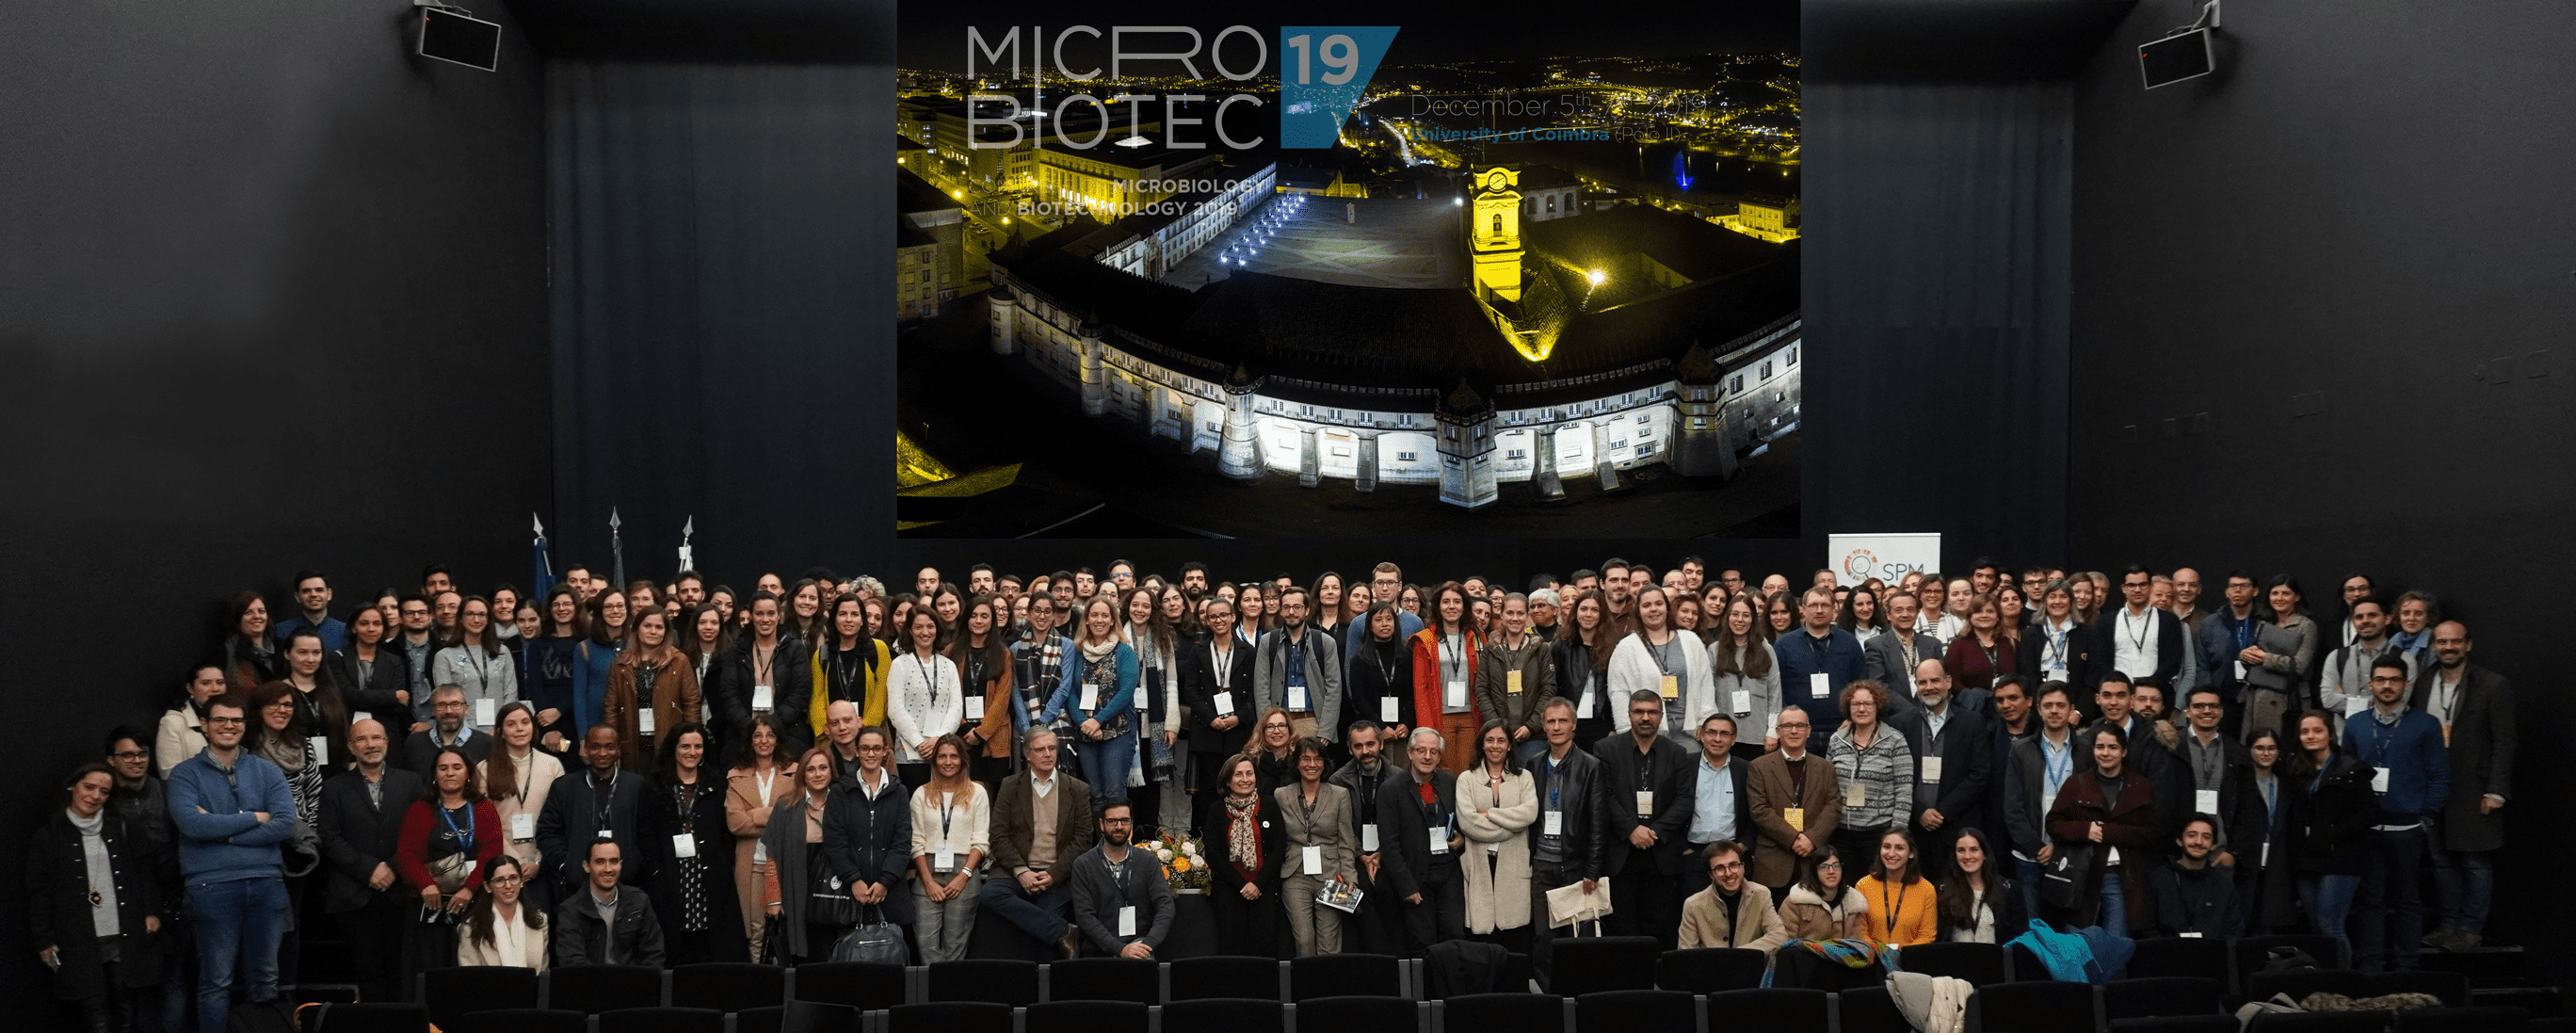 Microbiotec’19 - Participantes no último dia do evento, no Auditório do Polo II